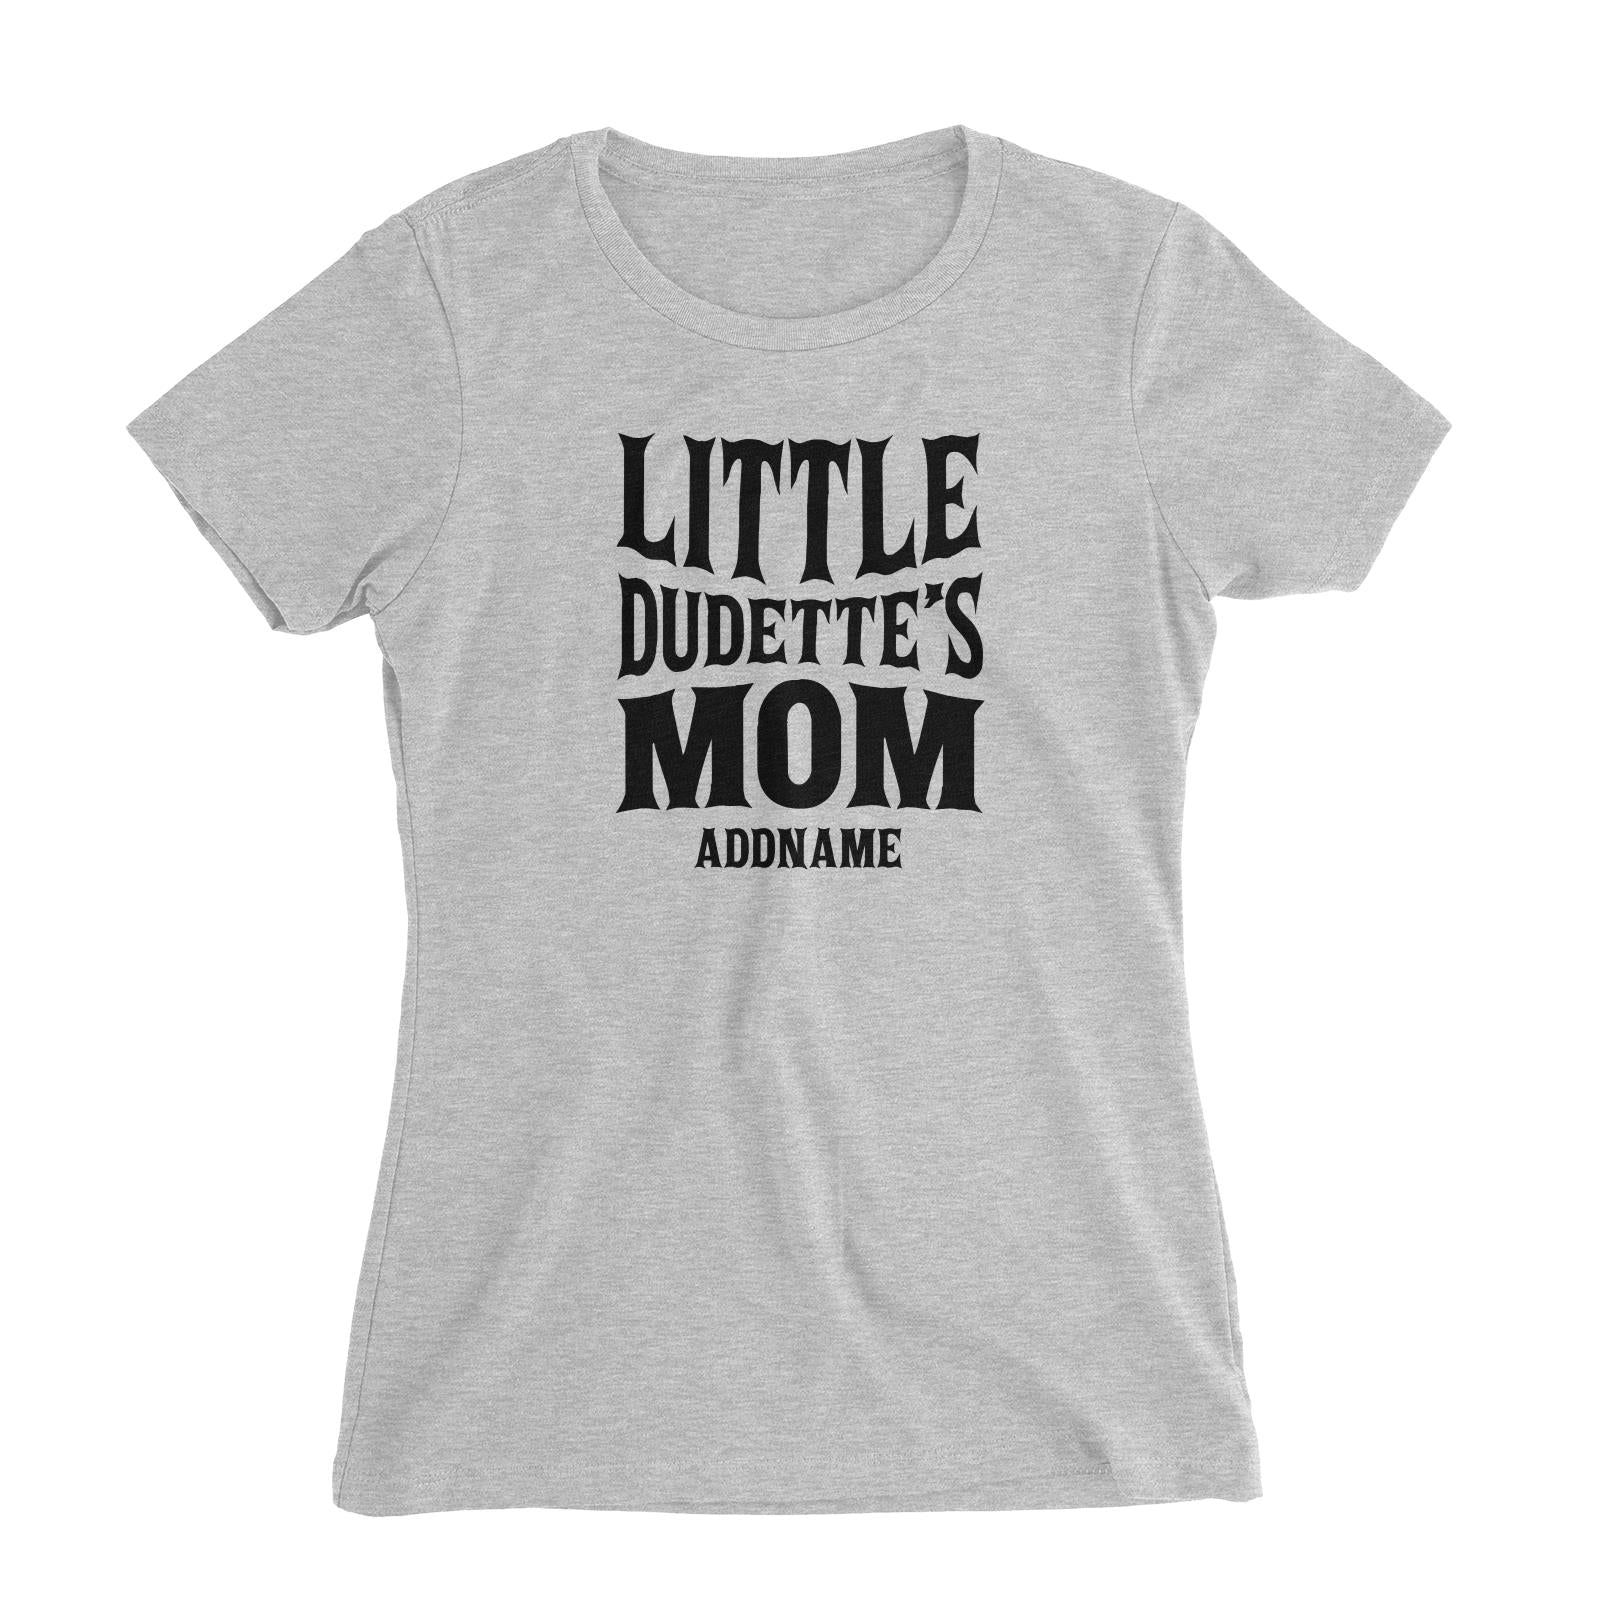 Little Dudettes Mom Women's Slim Fit T-Shirt